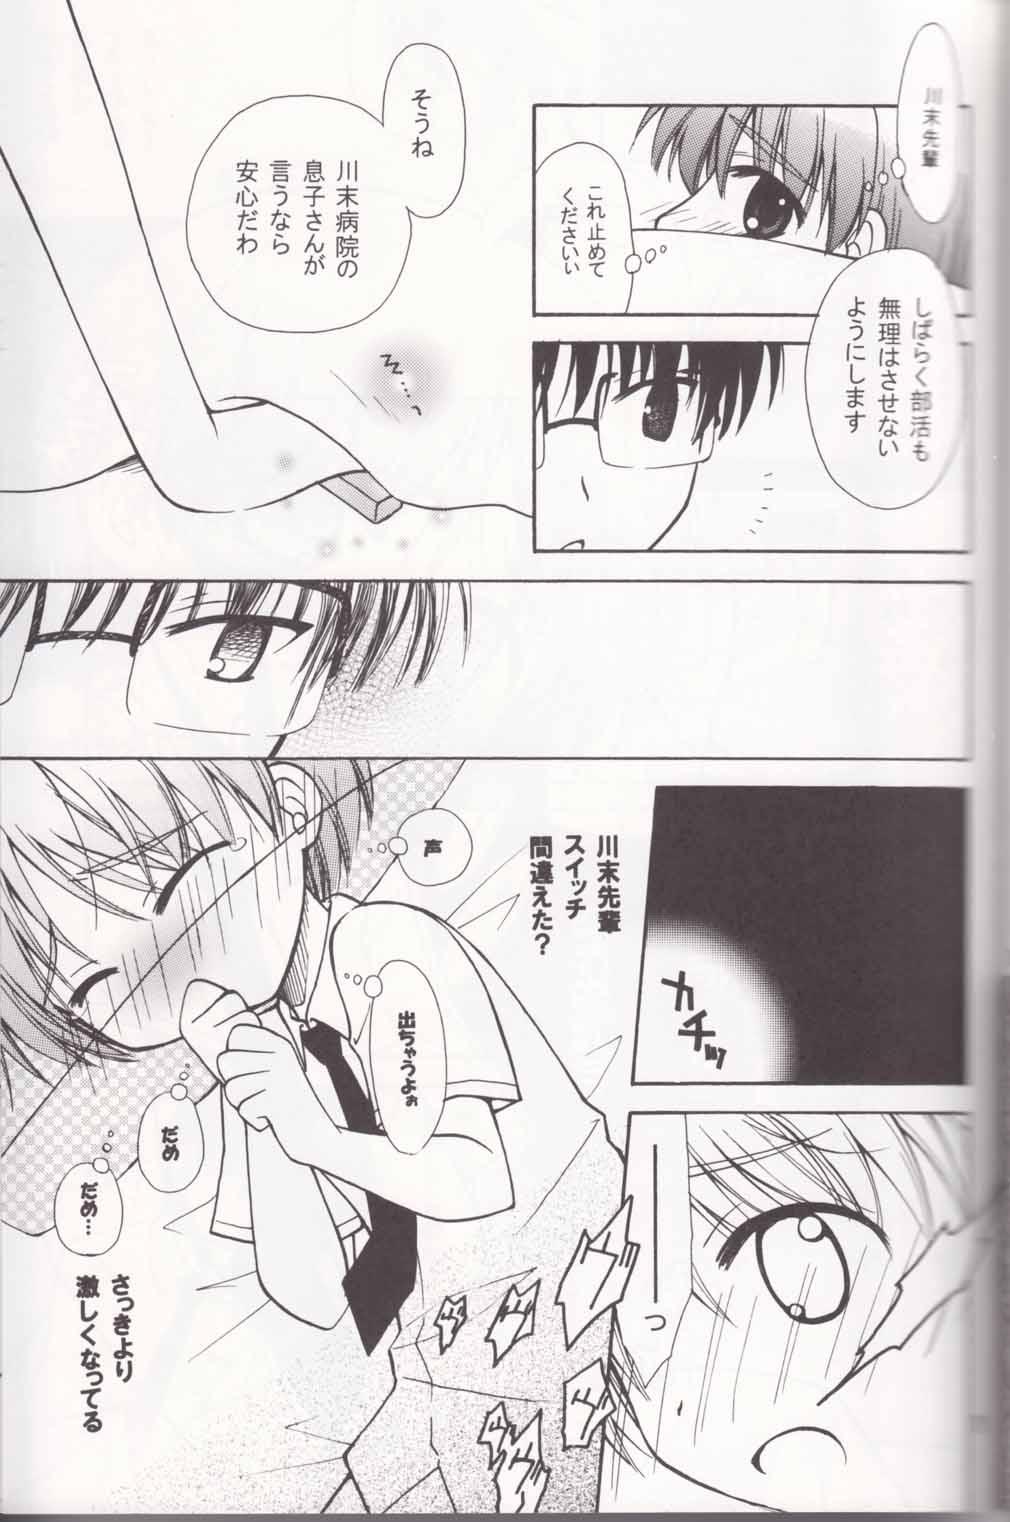 Dominatrix Boku no Sensei. - P2 lets play pingpong Ass To Mouth - Page 11